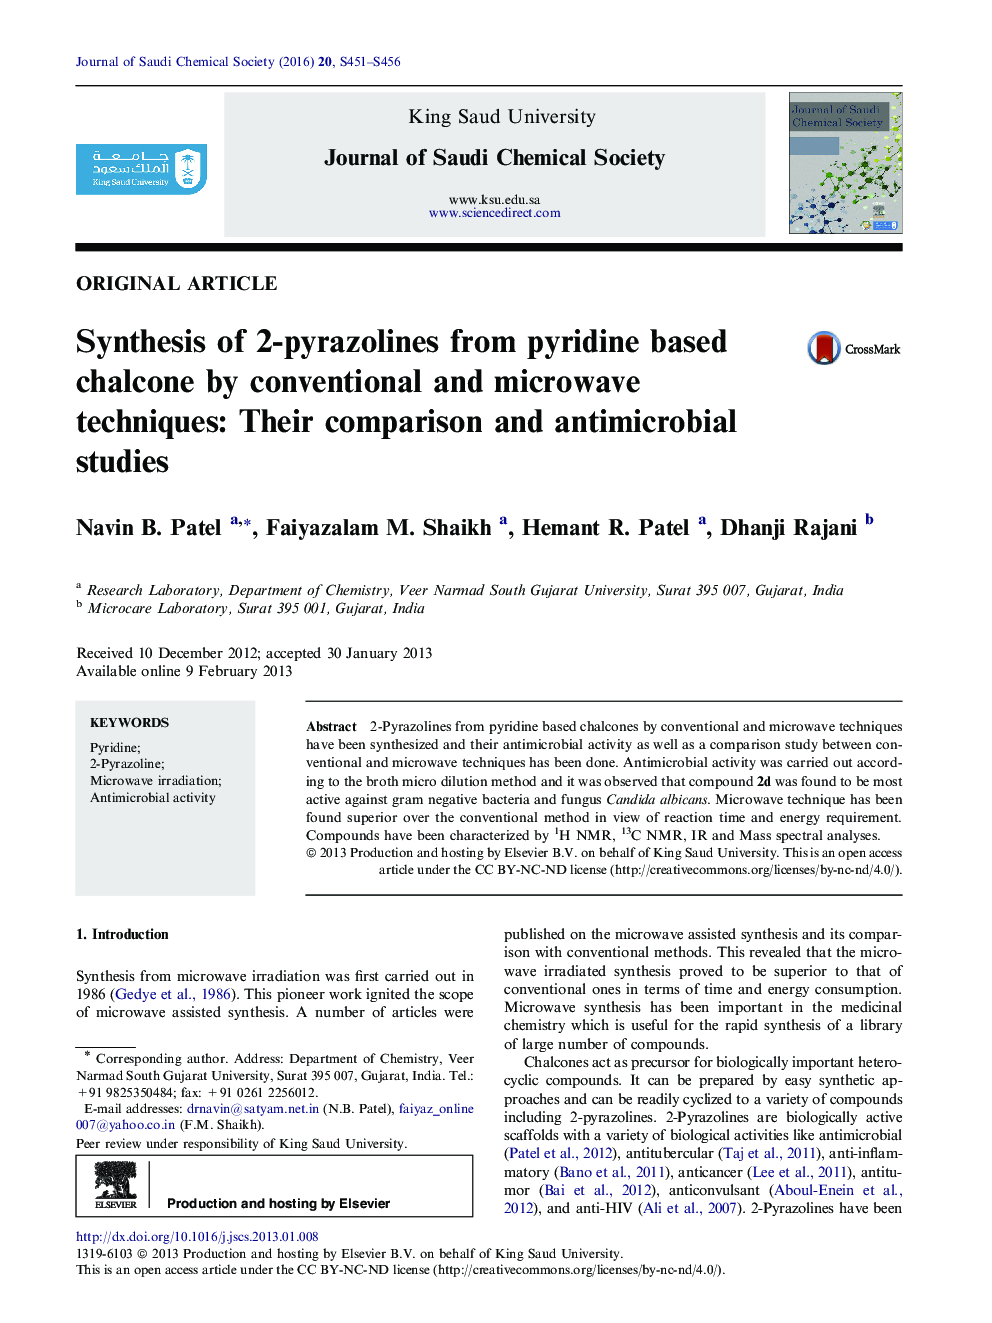 سنتز 2-پریازولین از کلرید پایدار مبتنی بر پرییدین با استفاده از تکنیک های مرسوم و مایکروویو: مقایسه و مطالعات ضد میکروبی 